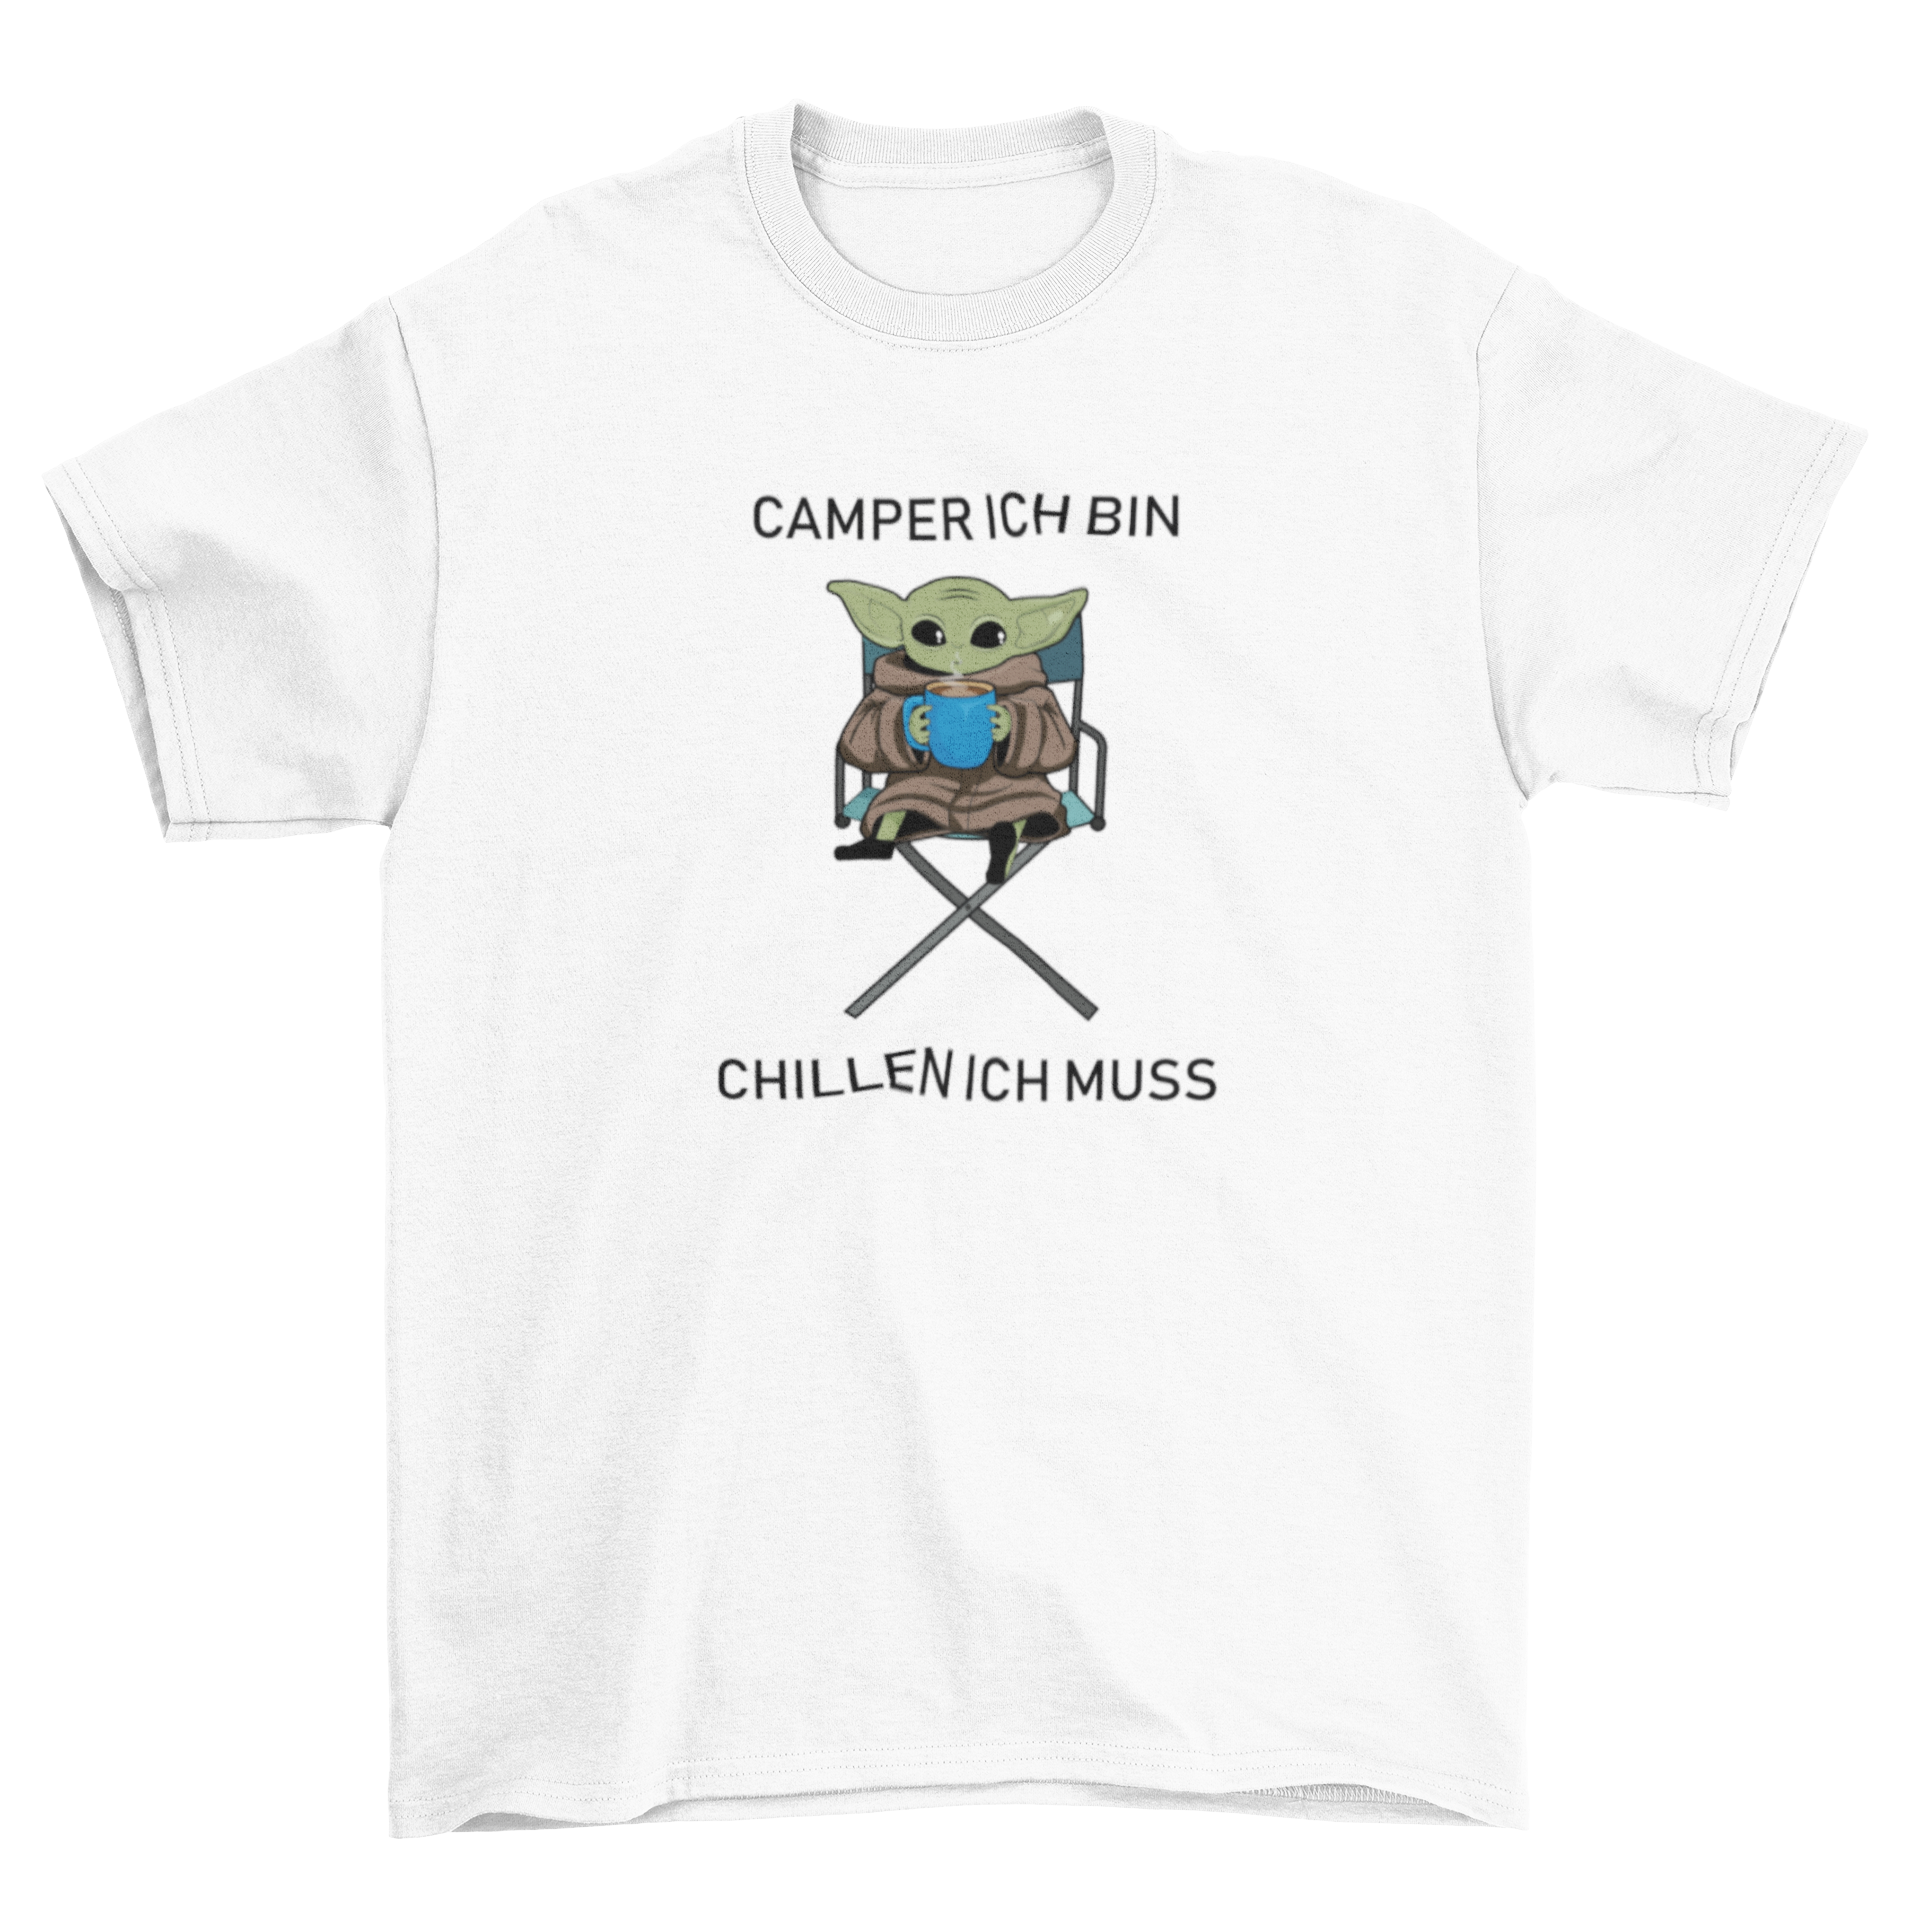 Camper ich bin, chillen ich muss  - T-Shirt